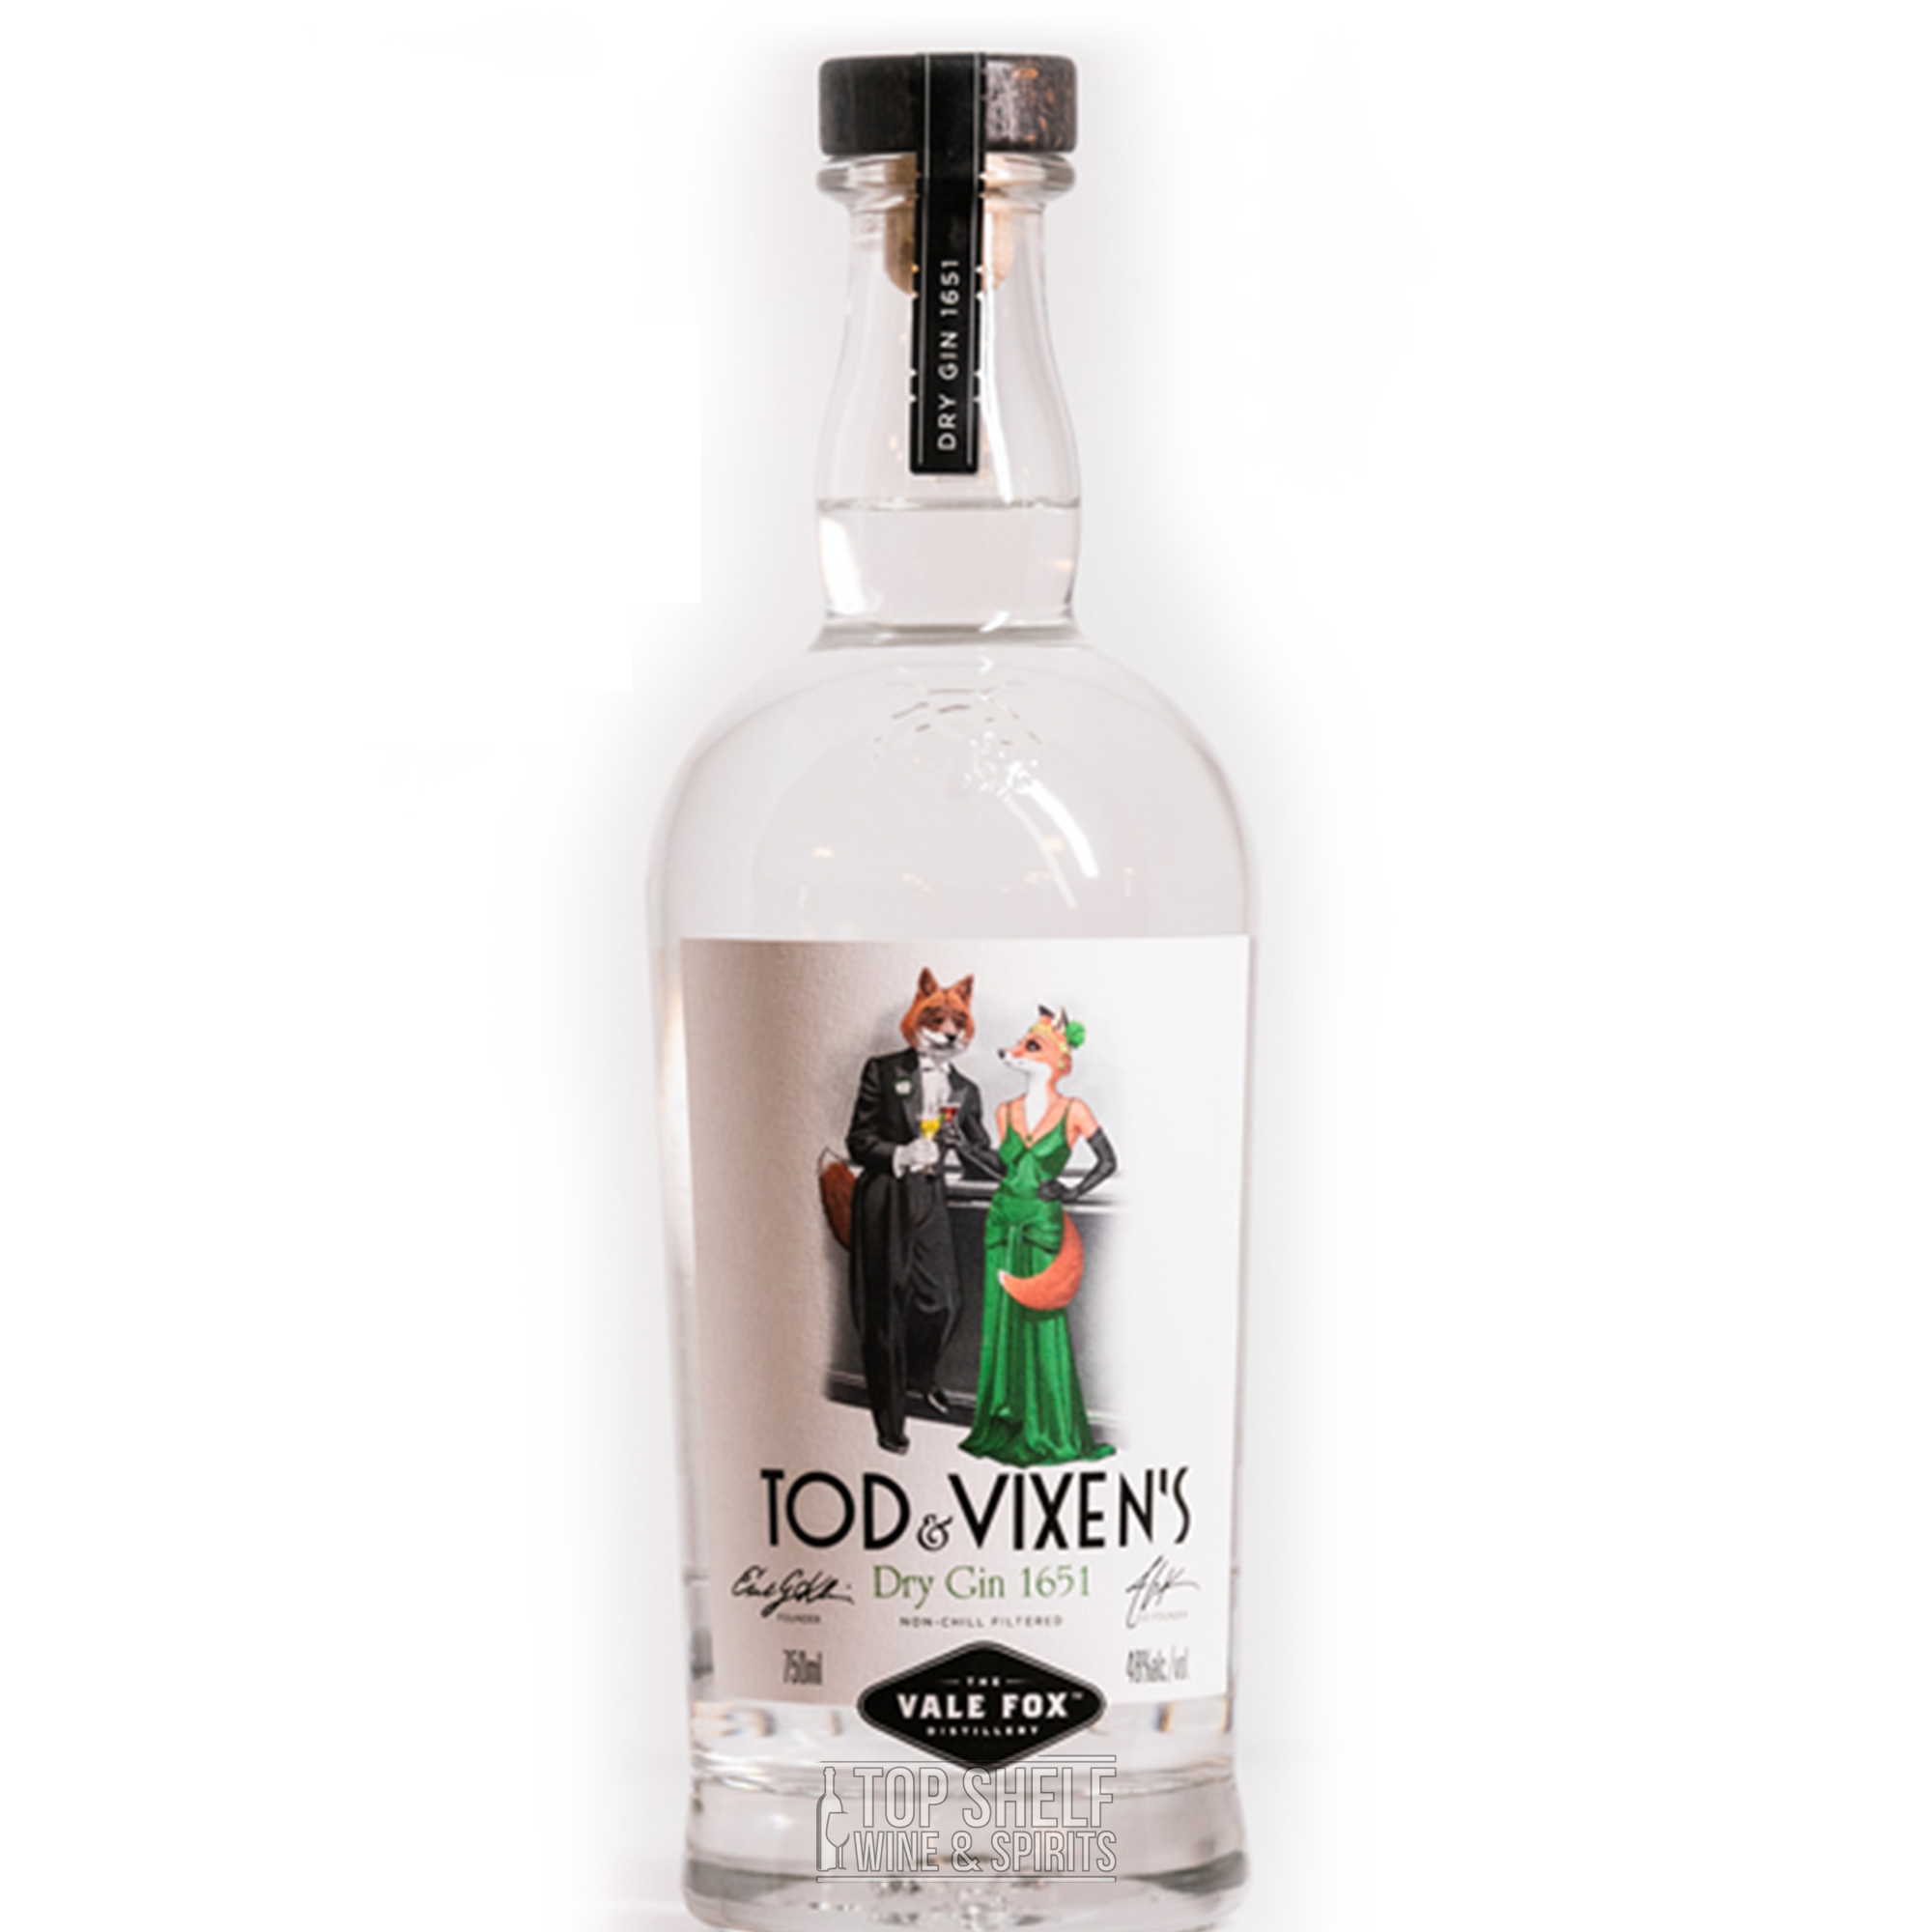 Tod & Vixens Dry Gin 1651